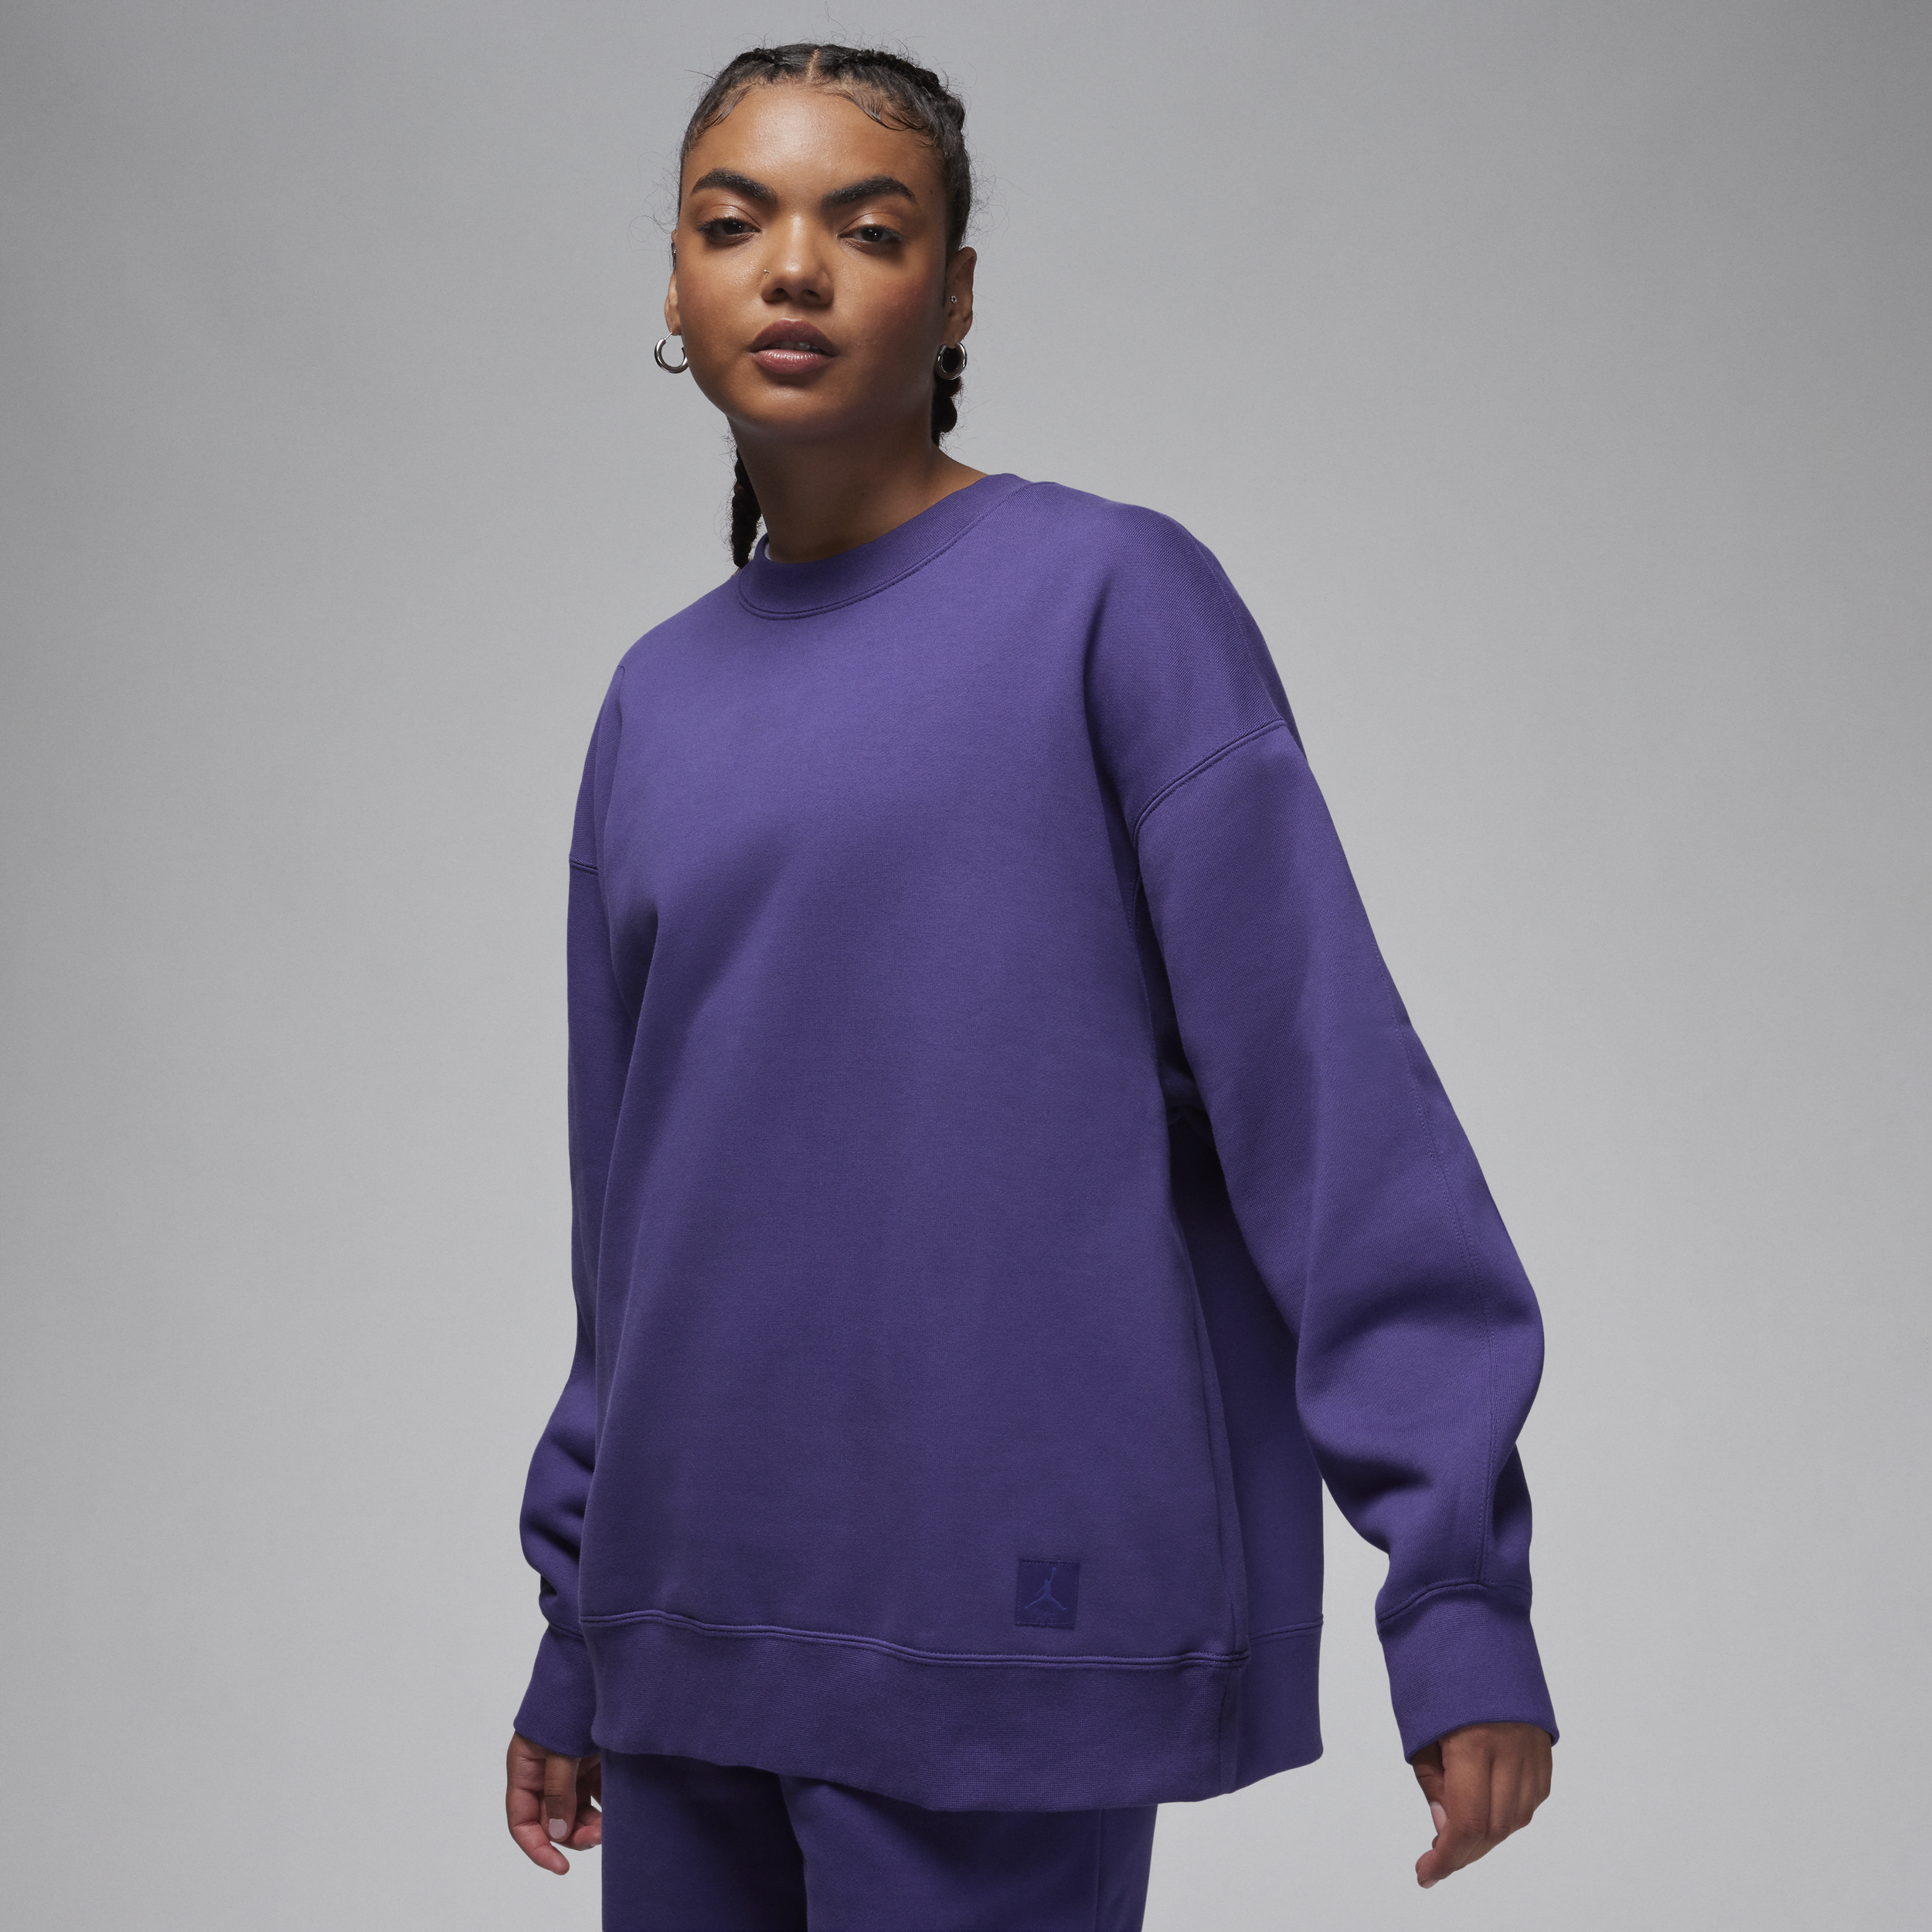 Jordan Flight-sweatshirt i fleece med rund hals til kvinder - lilla